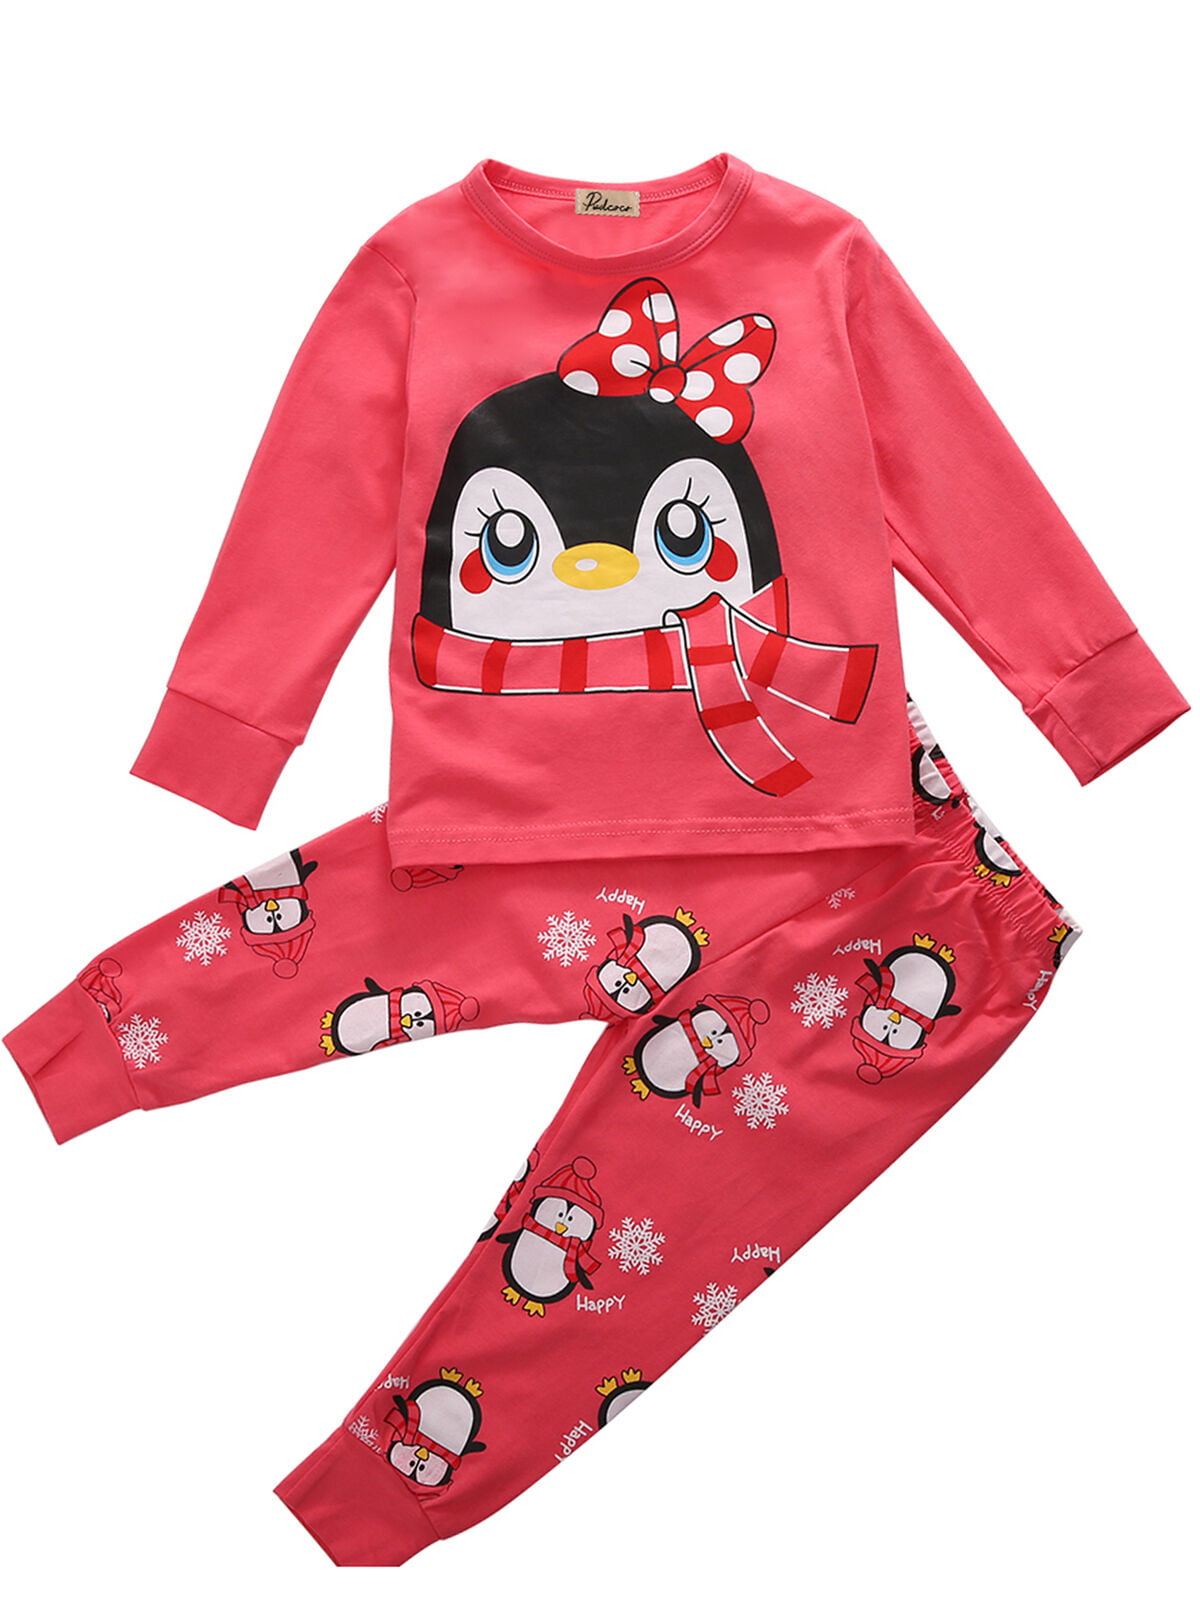 Kids' Tops+Pants Toddlers Sleepwear Tops+Pants Summer 2pcs/Set Pajamas Sleepwear